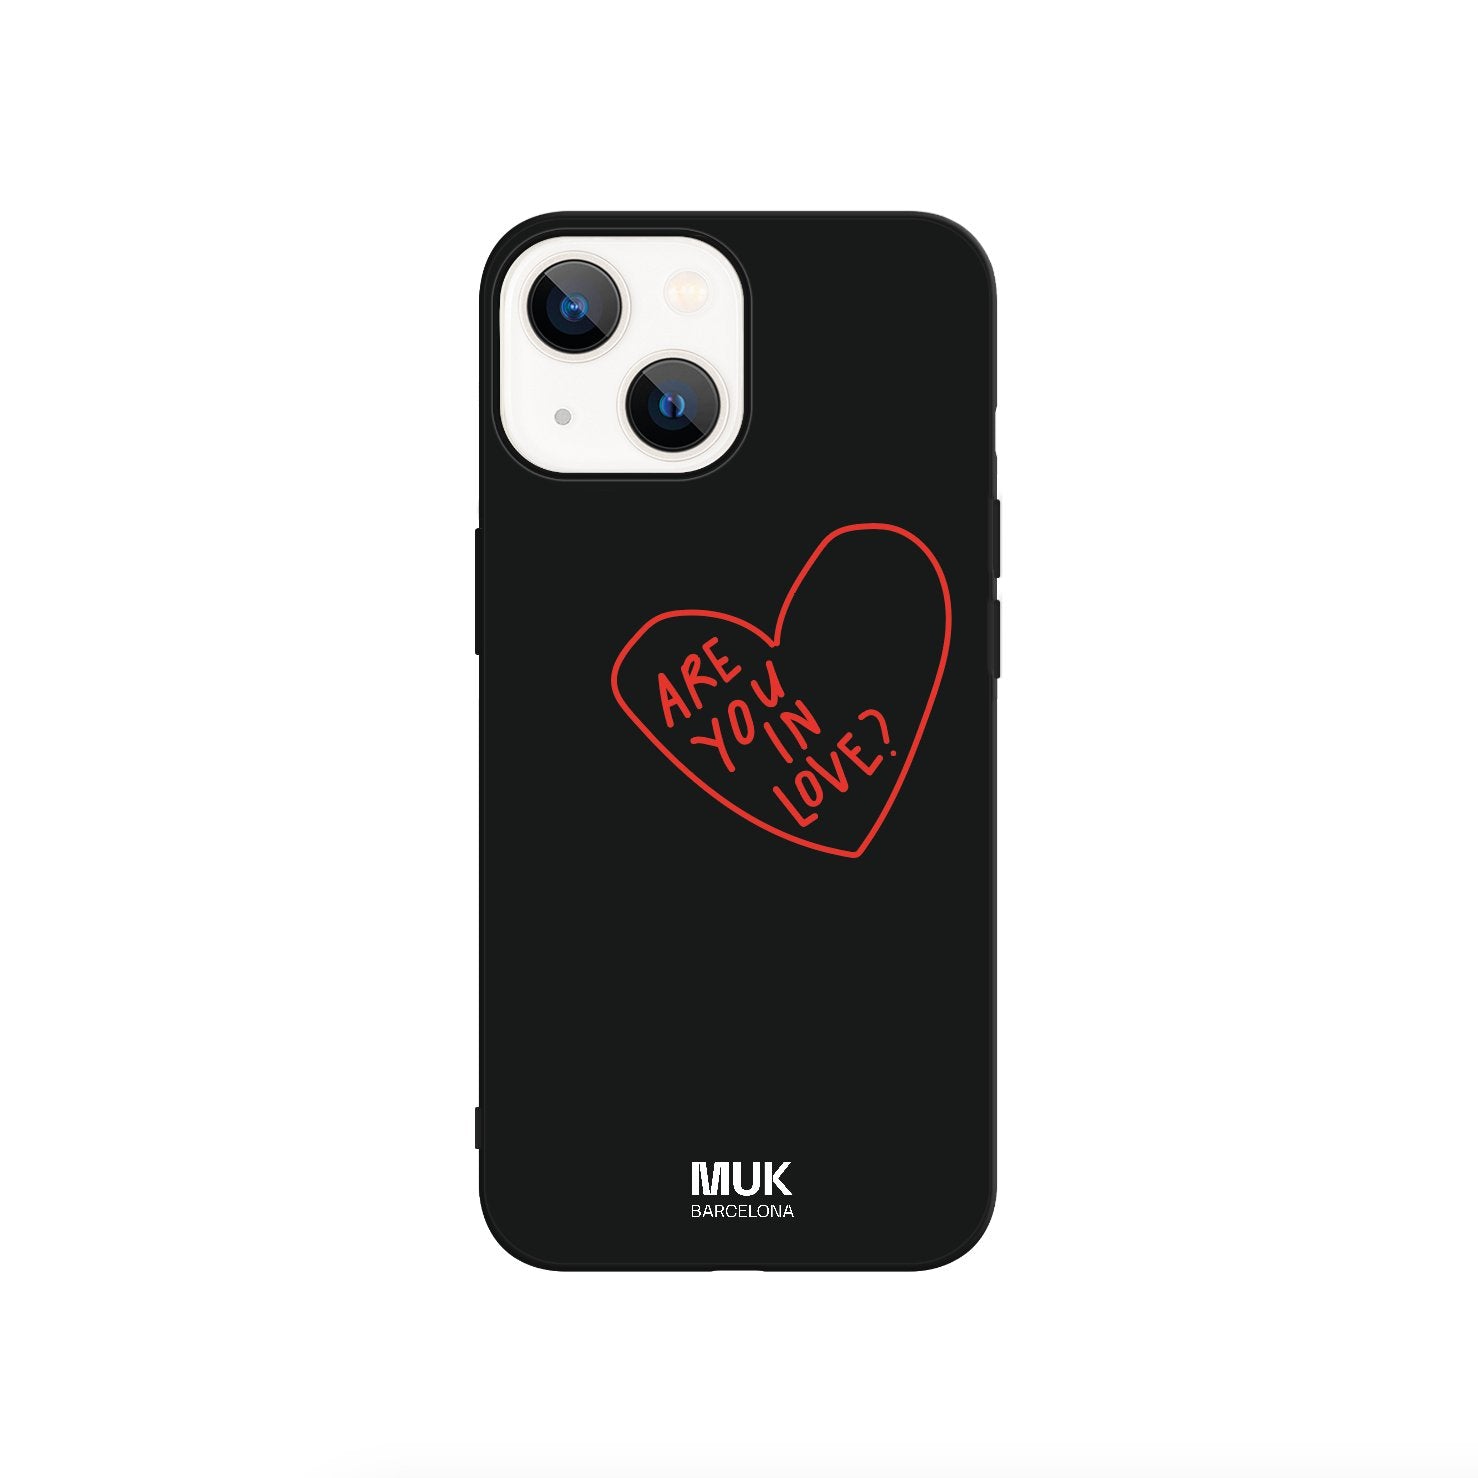 Funda de móvil TPU negra con corazón rojo y texto “Are you in love?”
